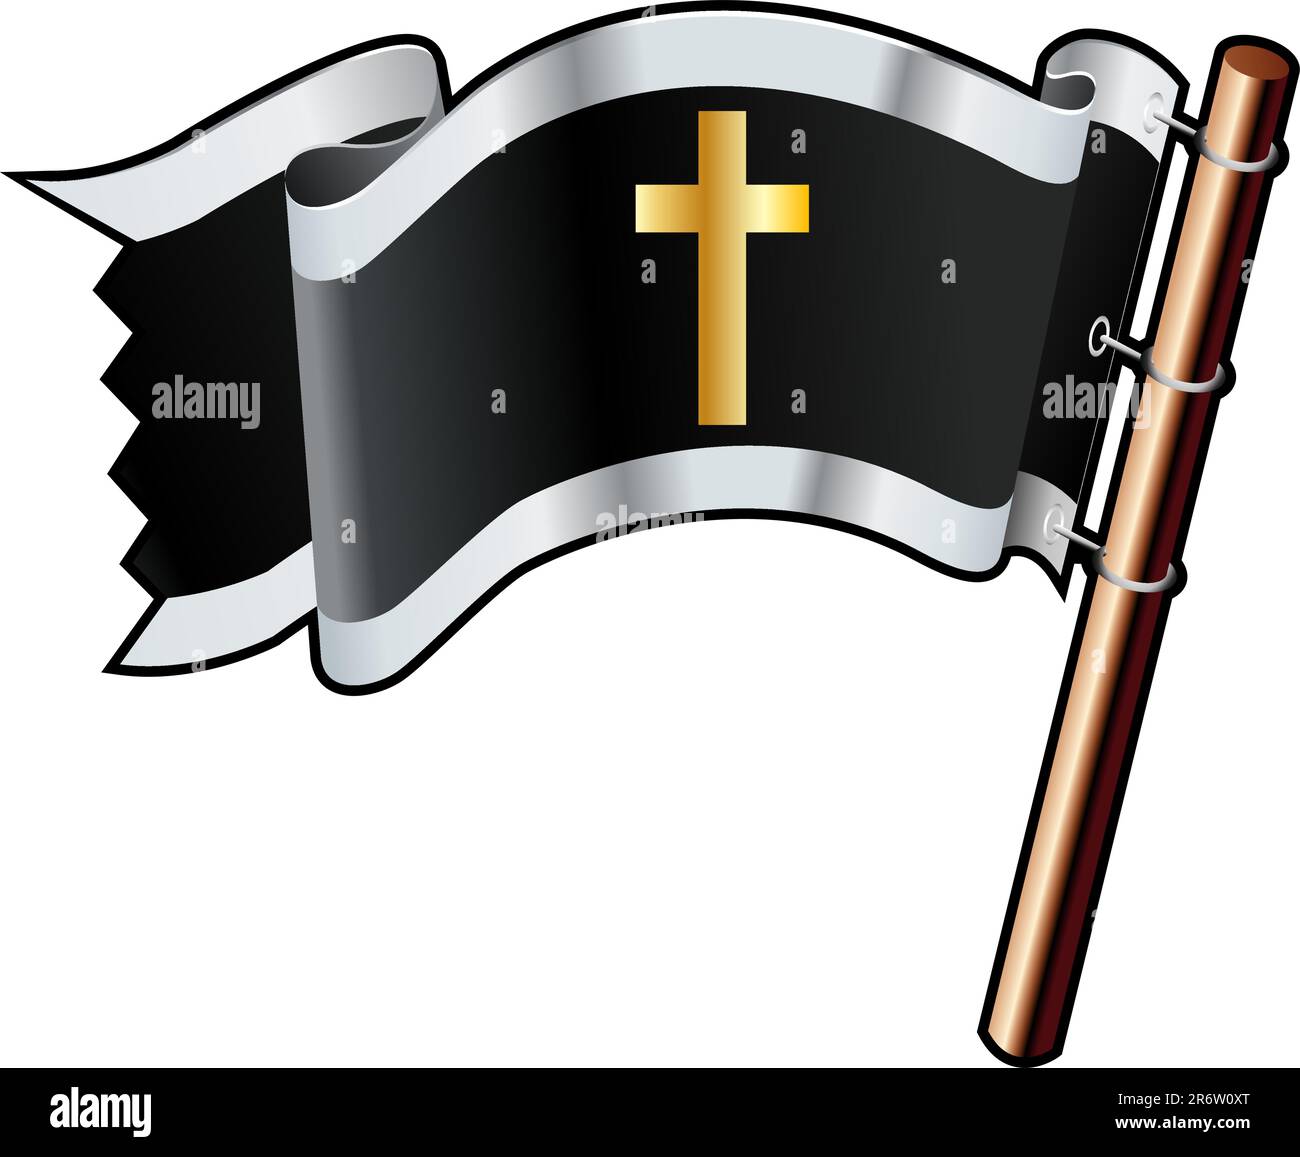 Christliches Kreuz religiöser Symbole auf schwarzer, silberner und goldener Vektorflagge, die auf Websites, in gedruckter Form oder auf Werbematerialien verwendet werden kann Stock Vektor